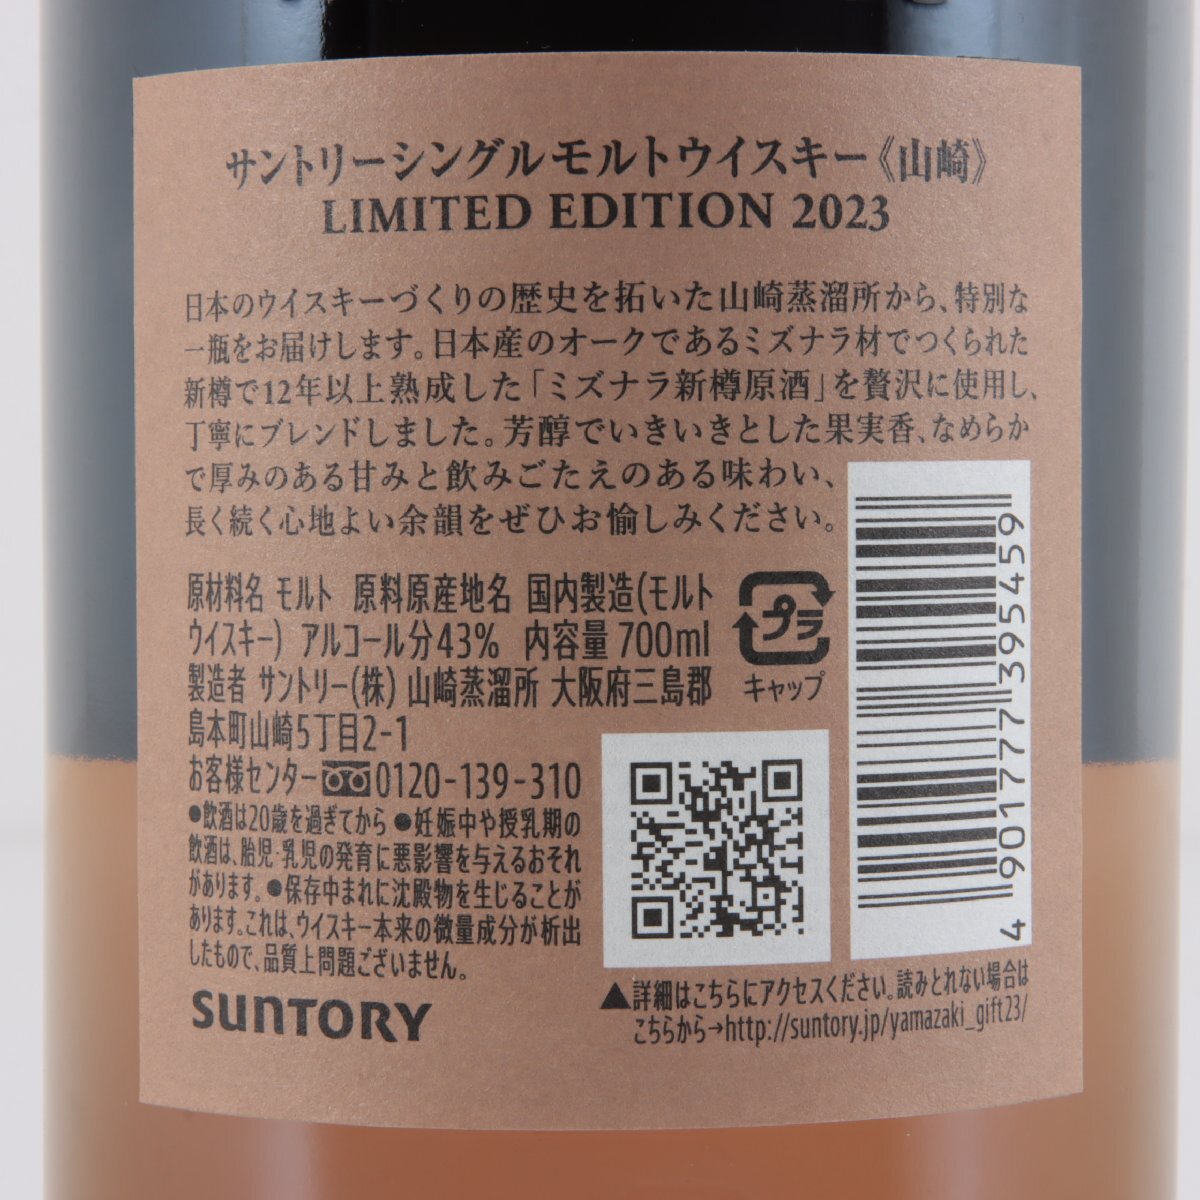 1 иен ~ Tokyo Metropolitan area ограничение отправка Suntory Yamazaki Limited Edition 2023 700ml коробка * брошюра имеется 43% sake не . штекер 